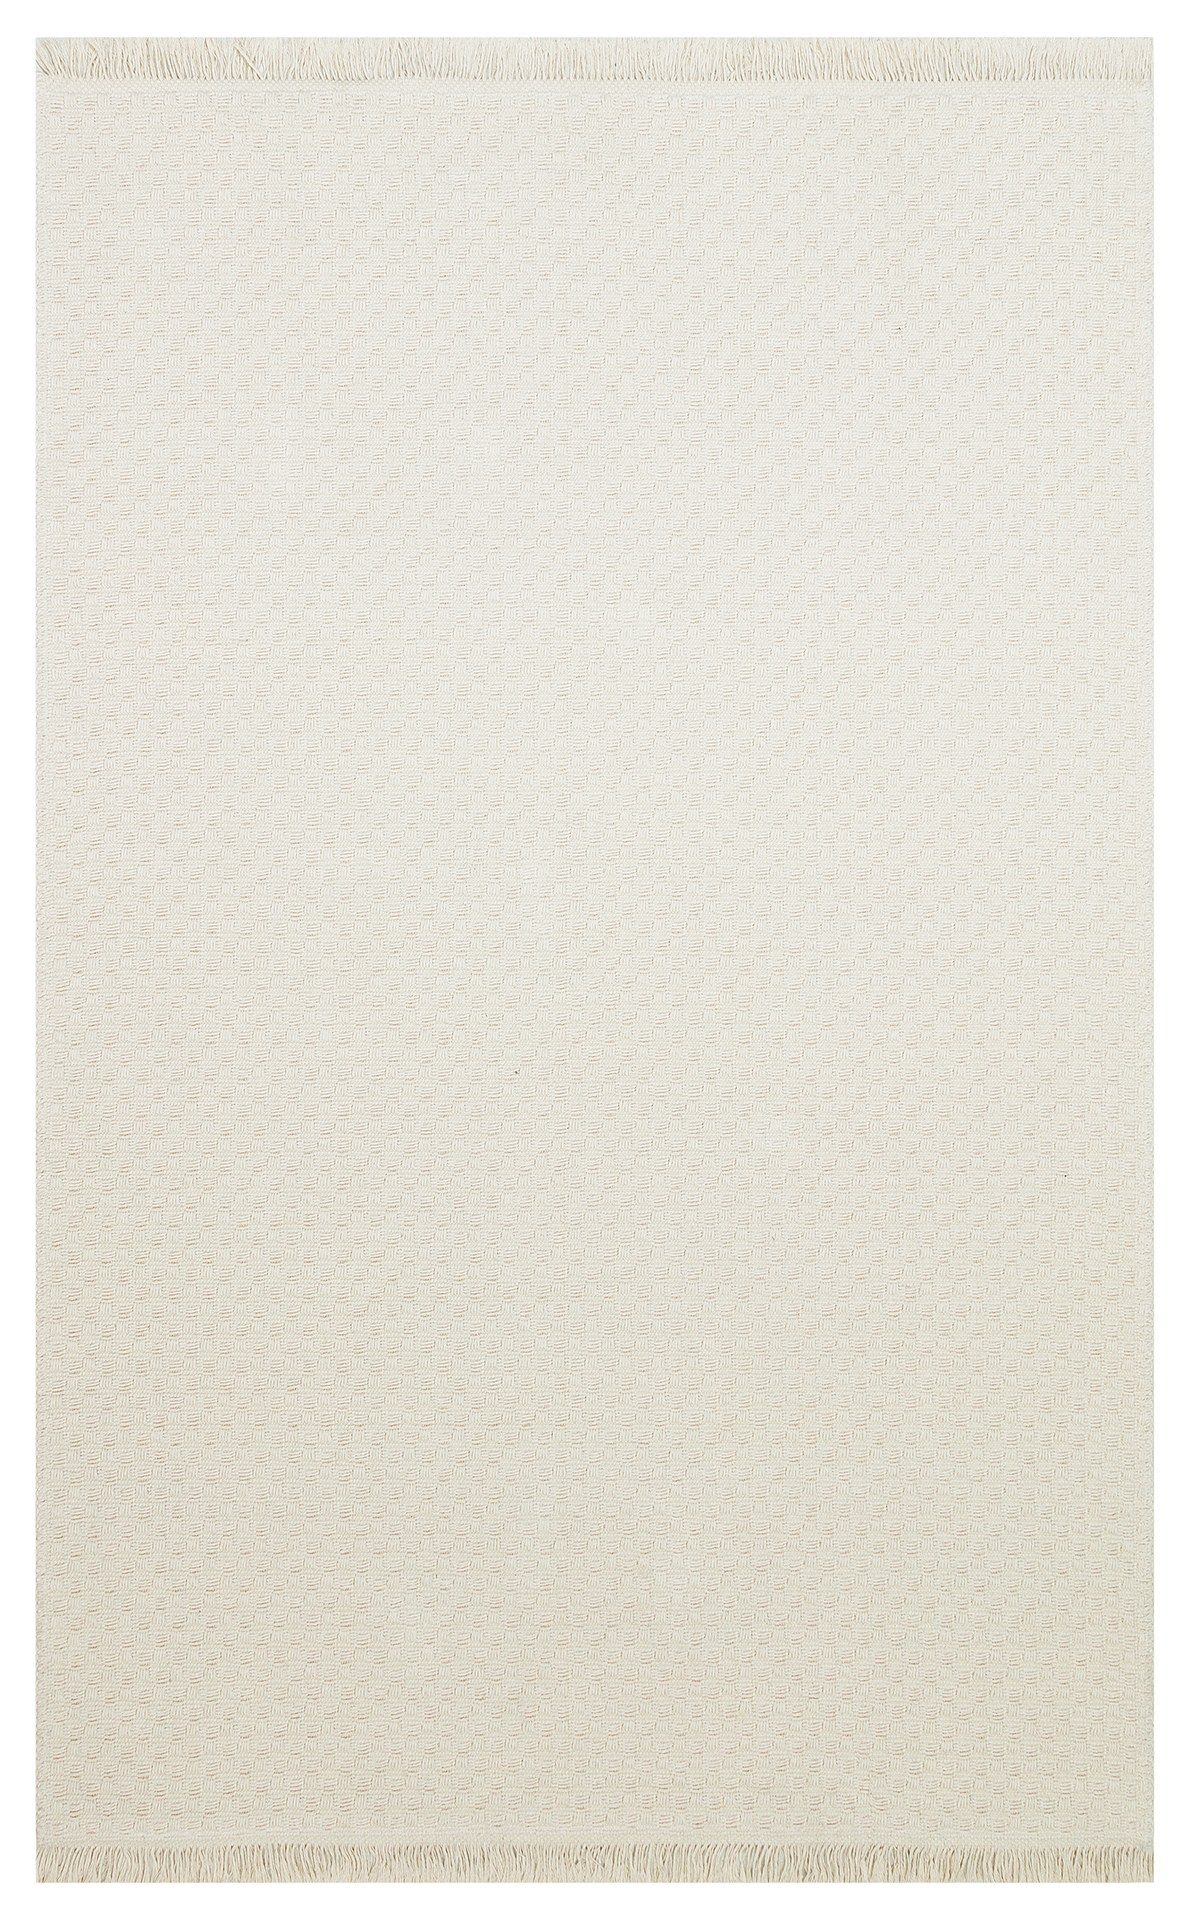 RV 01 - Fløde Tæppe (160 x 230)